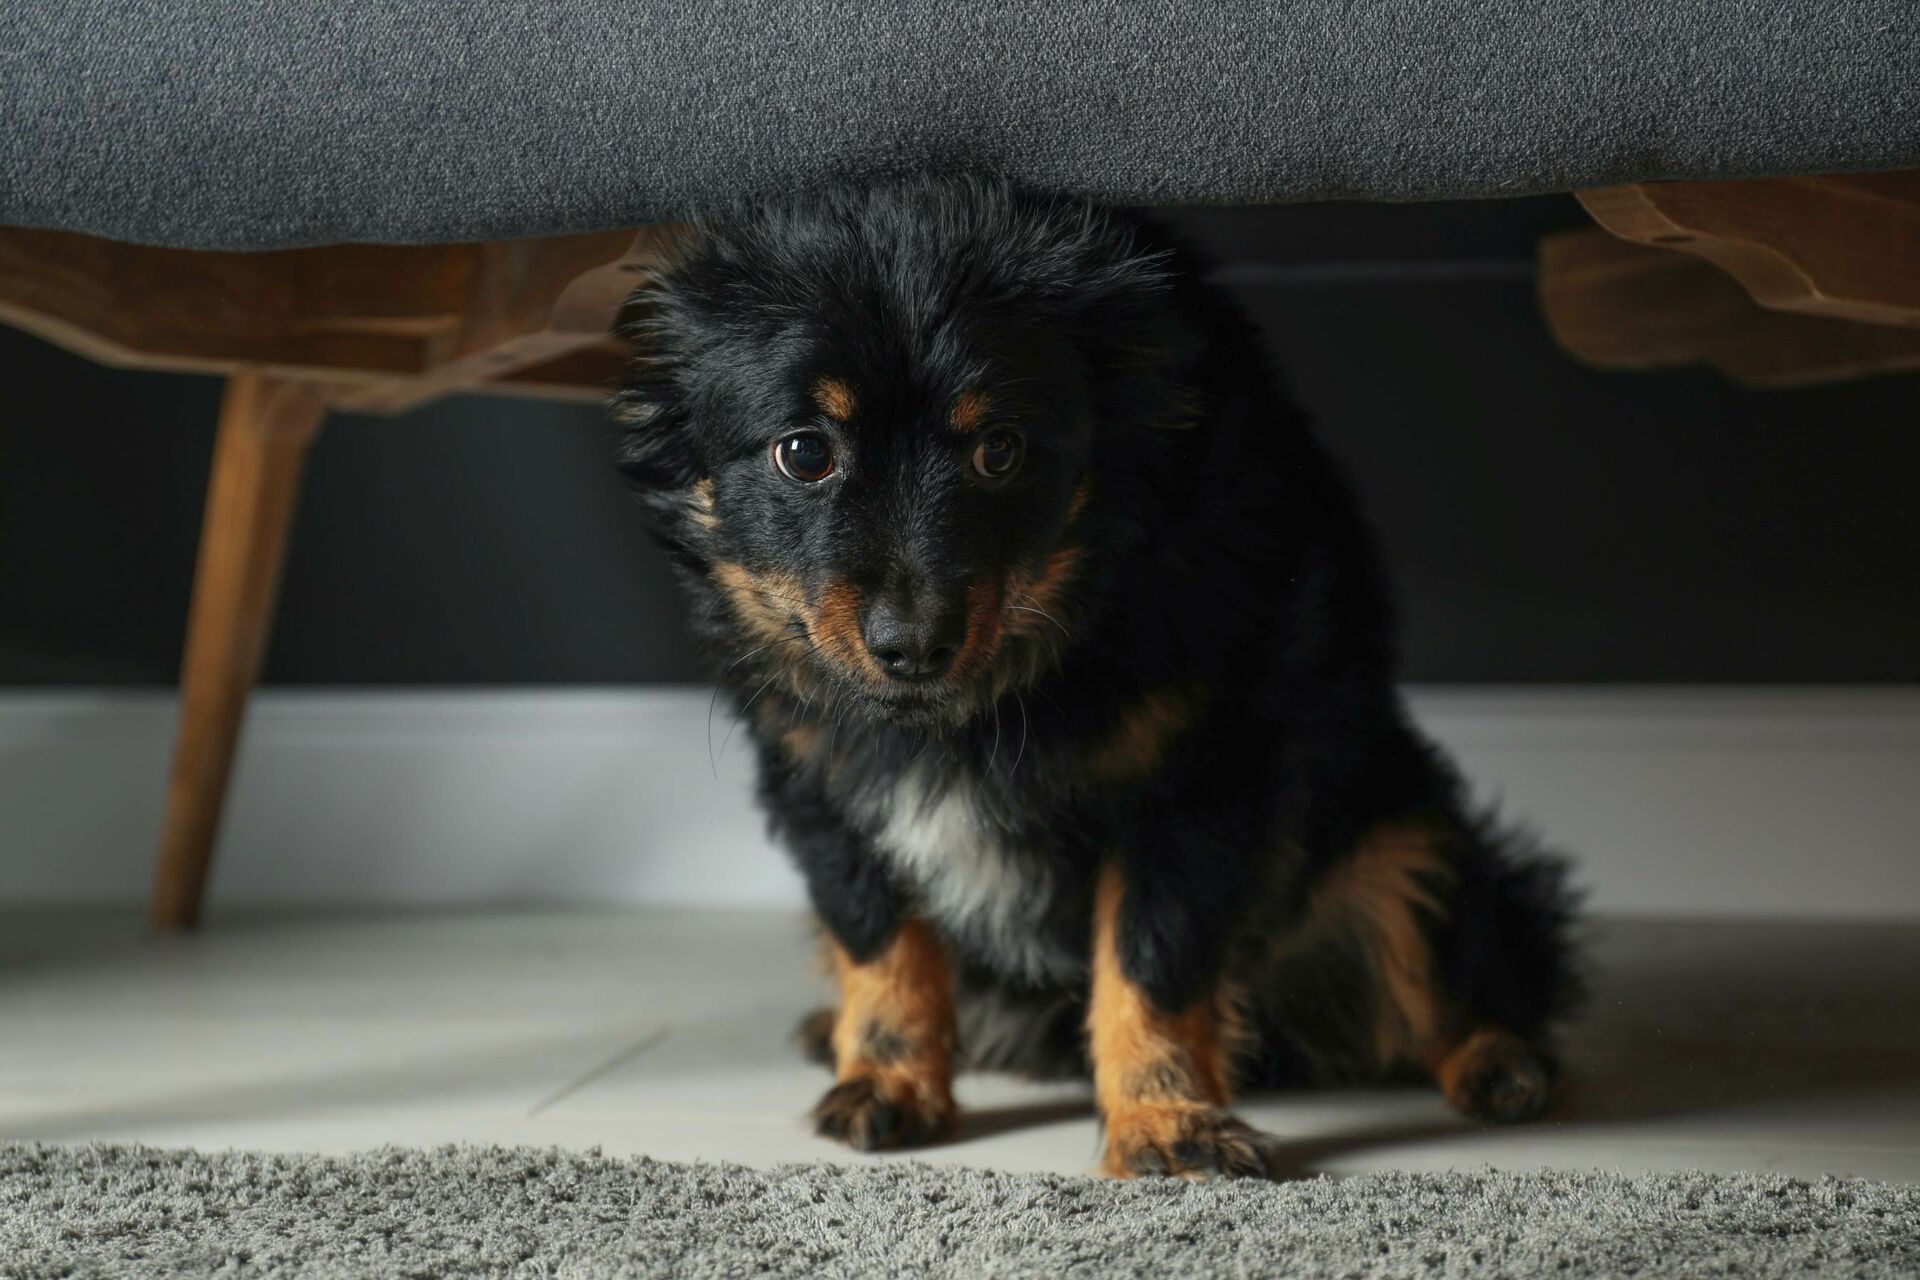  Gestresster Hund versteckt sich unter dem Sofa.